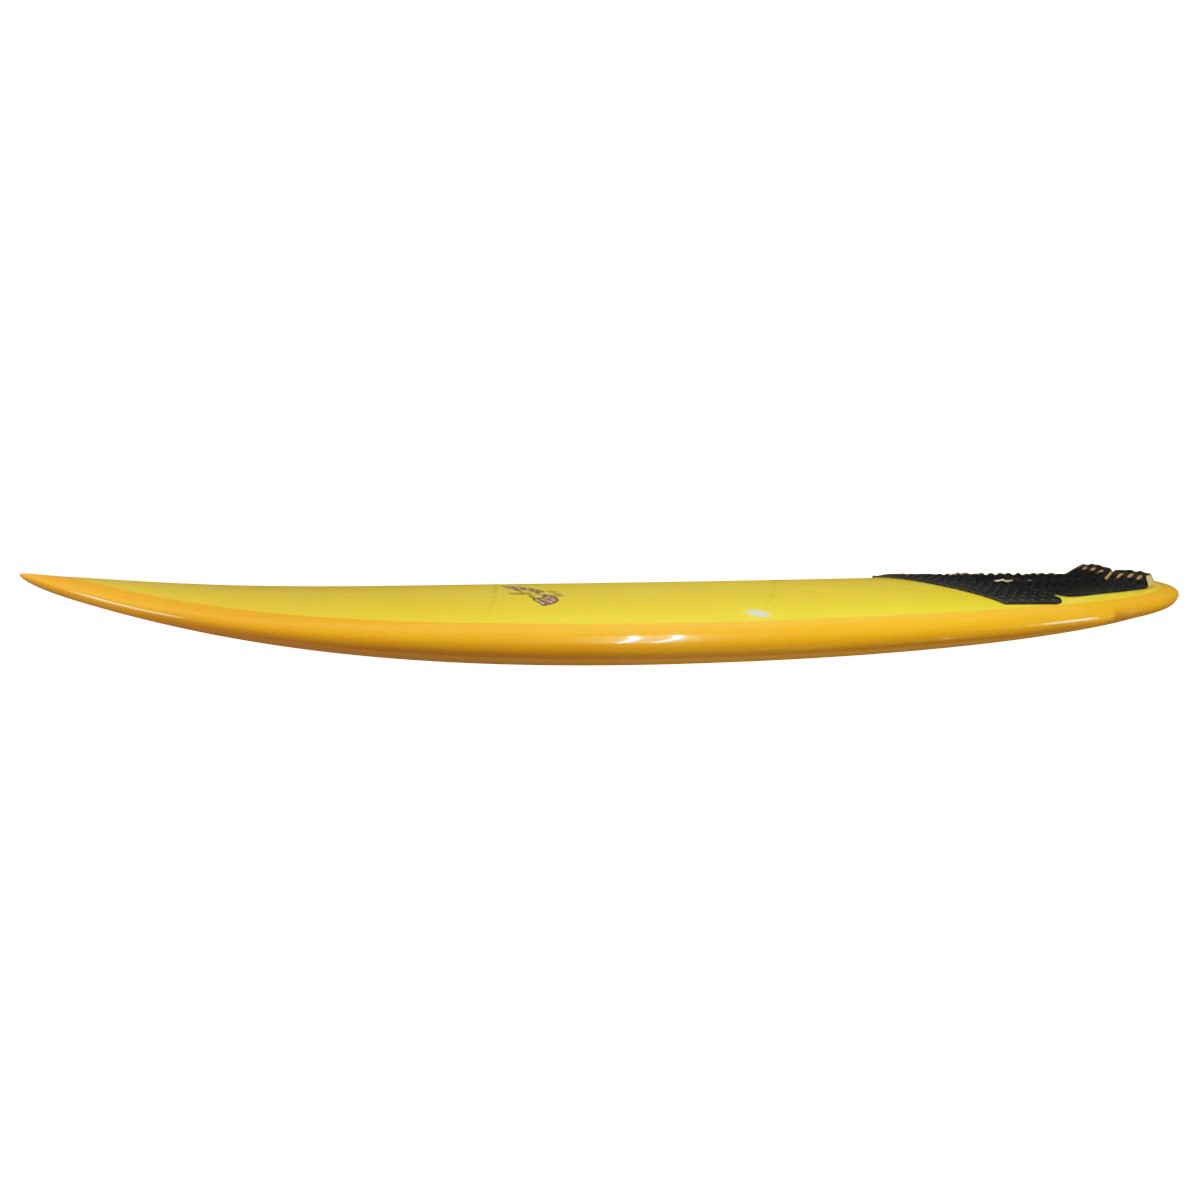 VON SOL SURFBOARDS / SHADOW 6`8